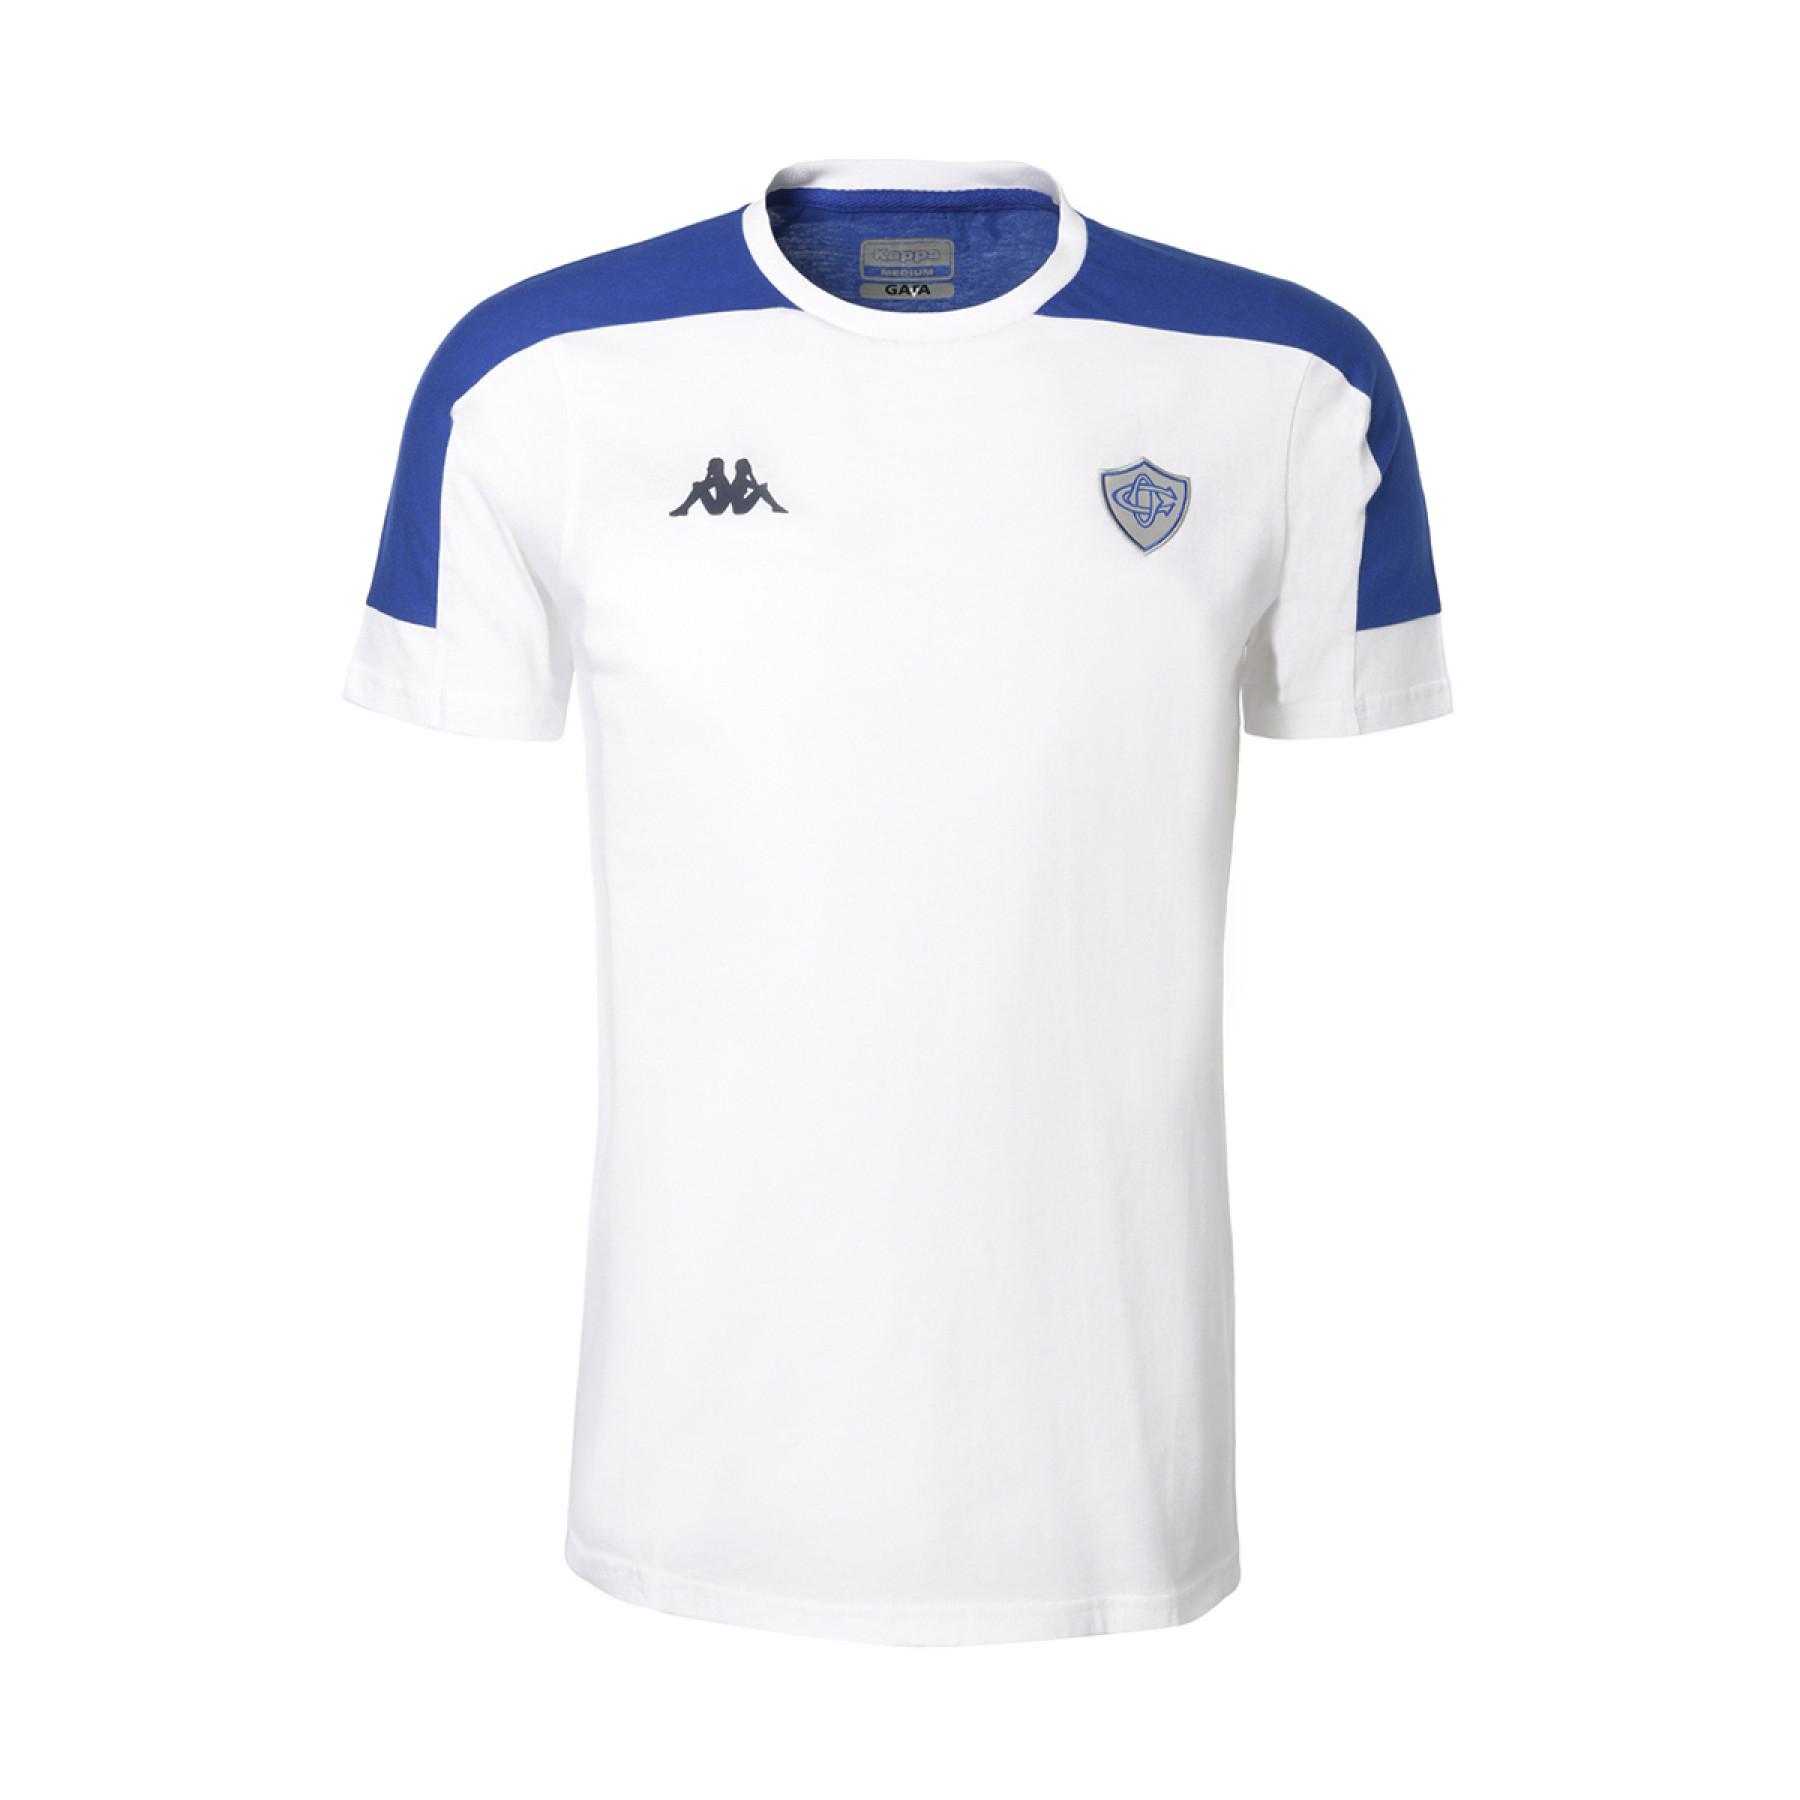 T-shirt för barn Castres Olympique 2020/21 algardi